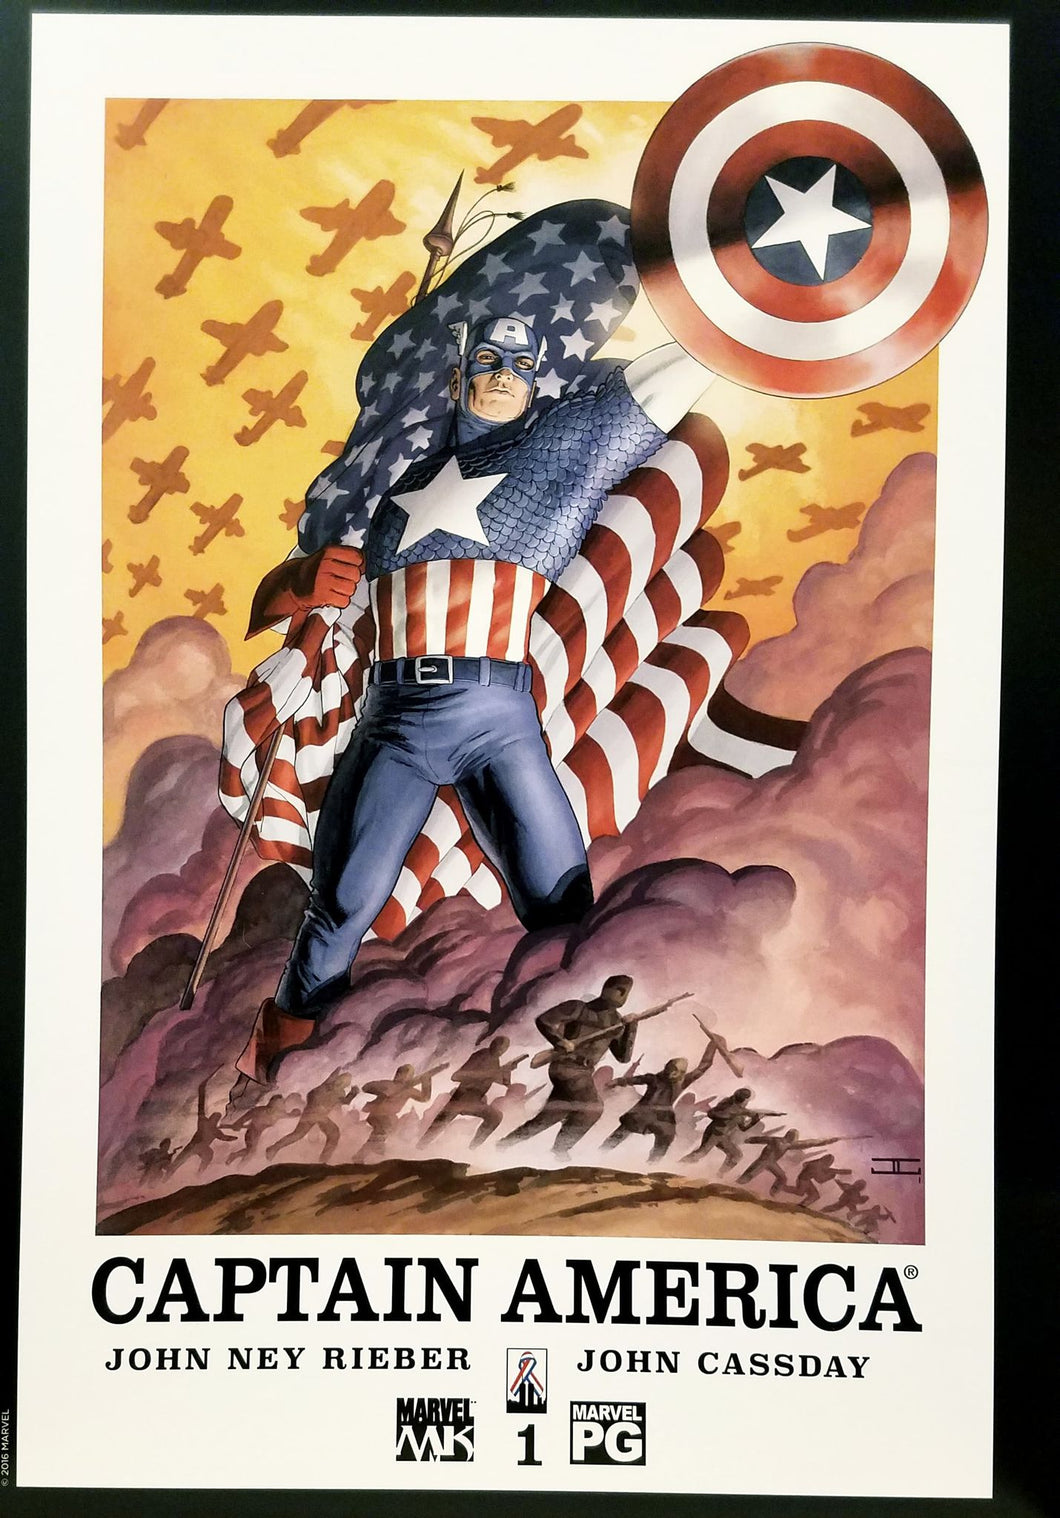 Captain America #1 12x16 FRAMED Art Poster Print by John Cassaday, Marvel Comics